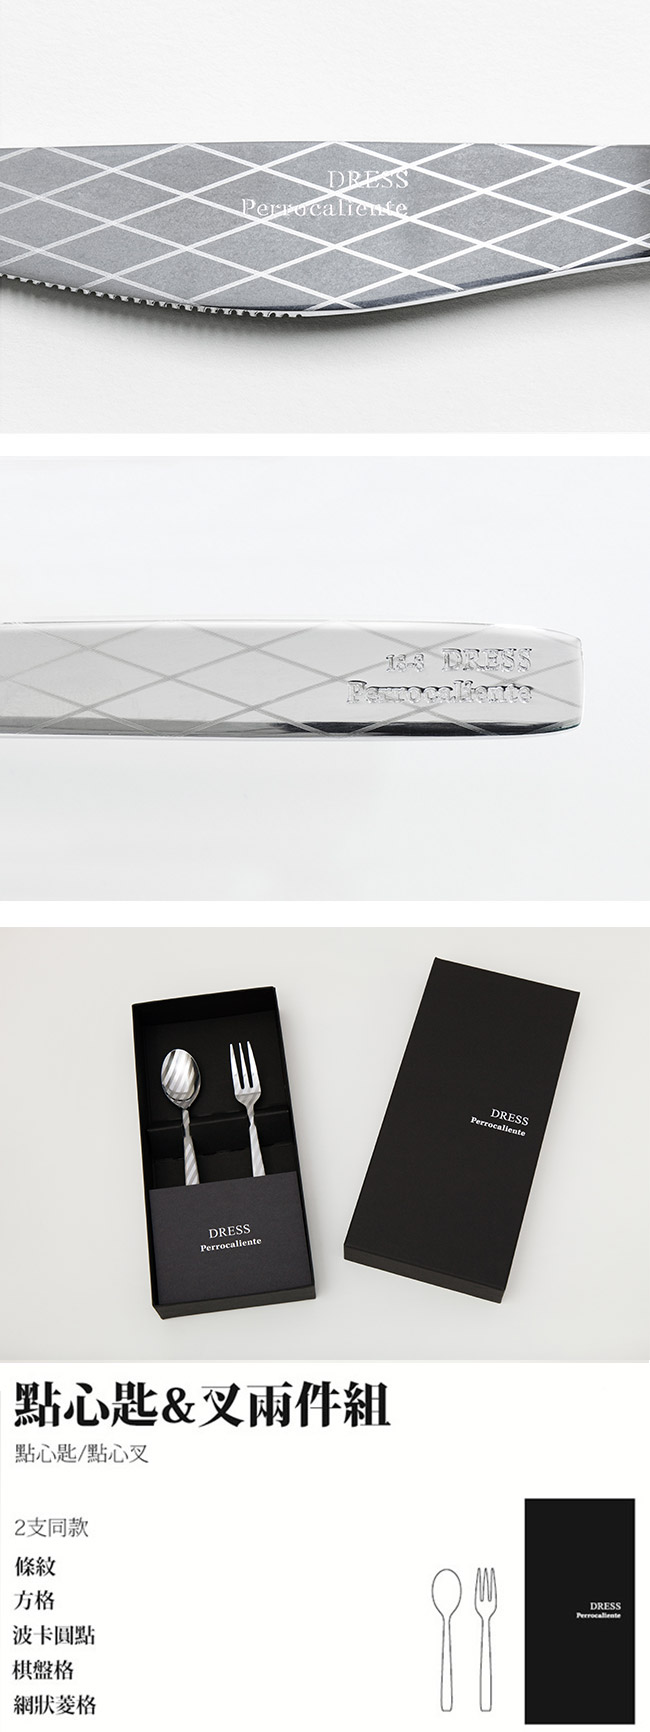 【3/26~4/1精選品牌9折優惠】日本 Perrocaliente Dress Gift Set 銀色盒裝餐具組 點心匙＆叉兩件組 網狀菱格